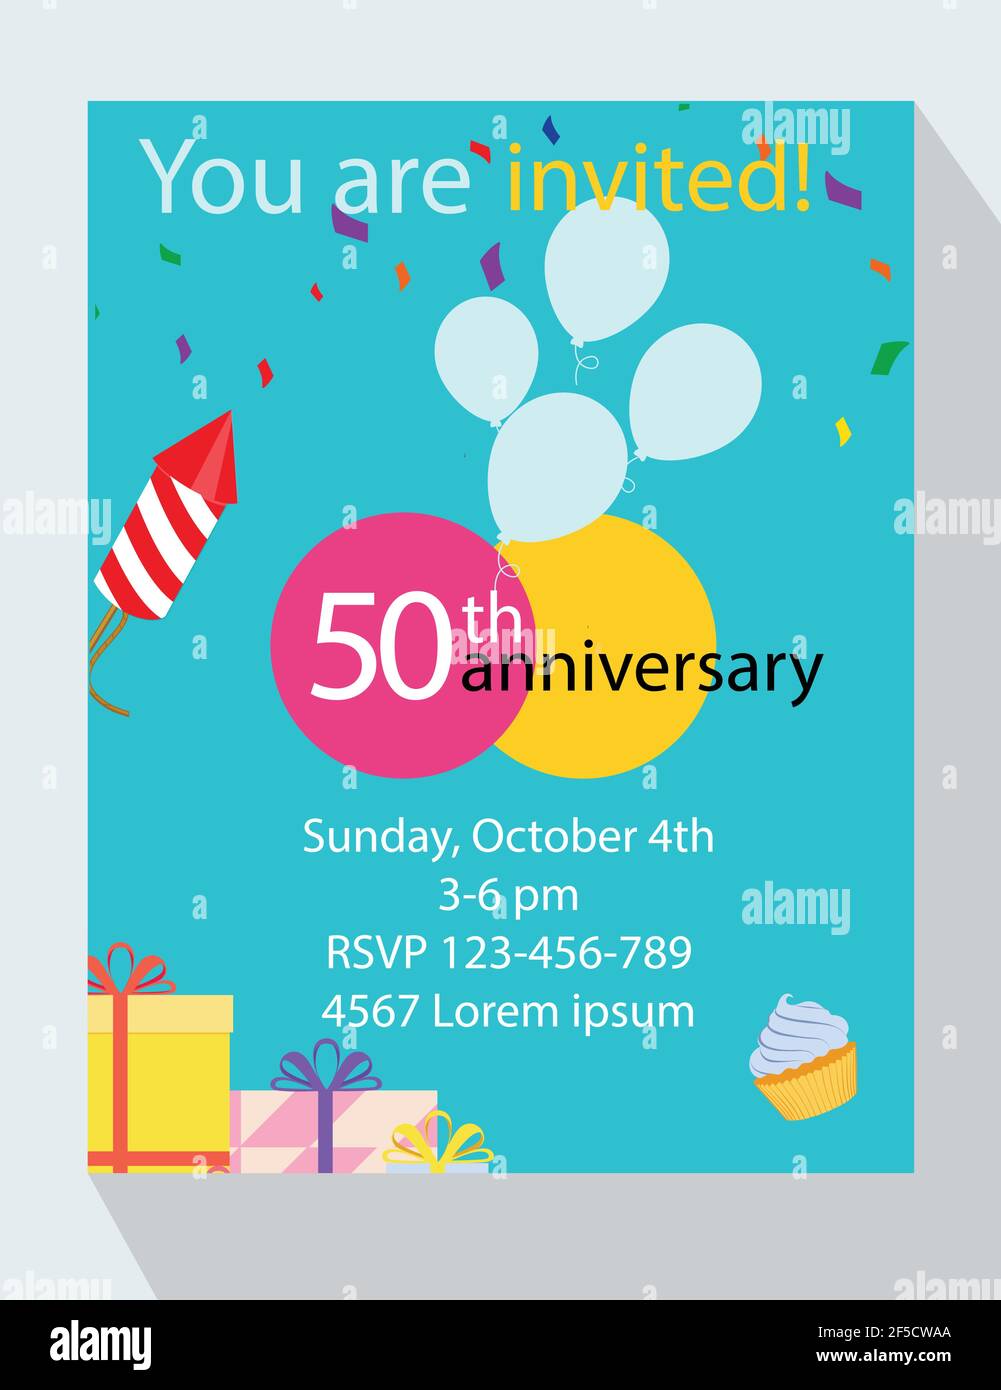 Biglietto di invito per la festa di compleanno. Sei invitato! Buon 50°  anniversario di compleanno! Immagine e Vettoriale - Alamy